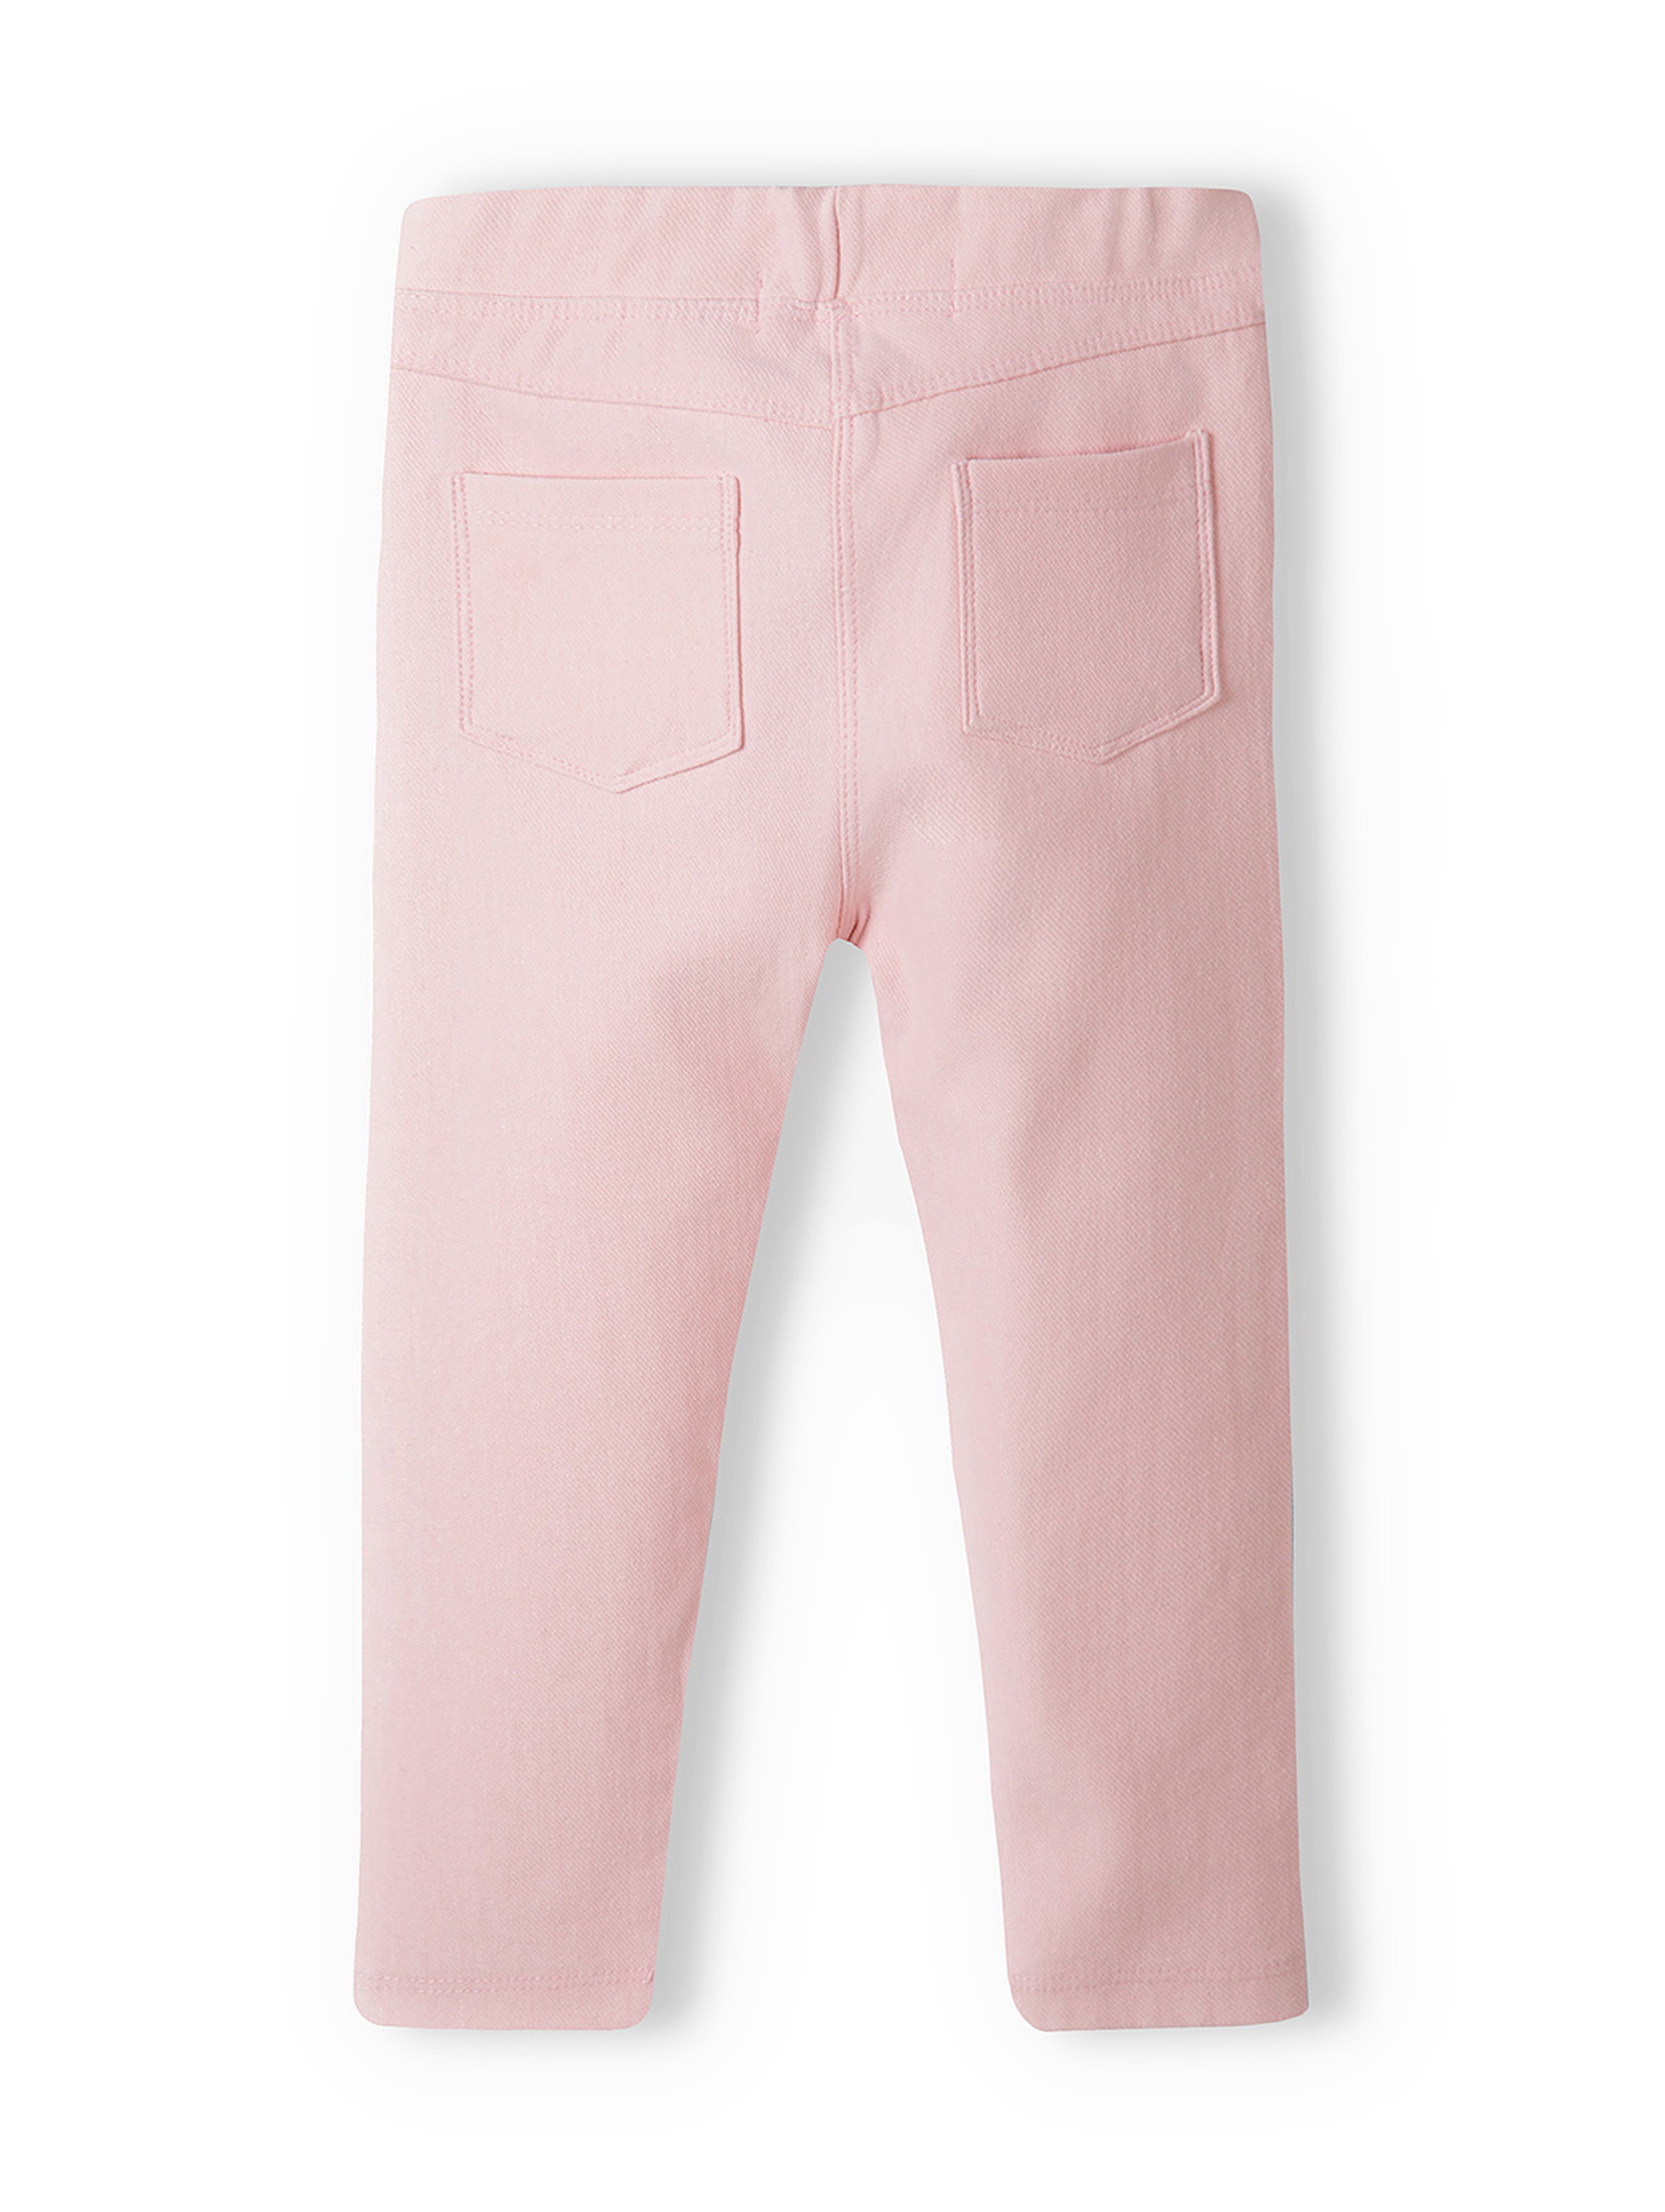 Różowe spodnie typu jegginsy niemowlęce